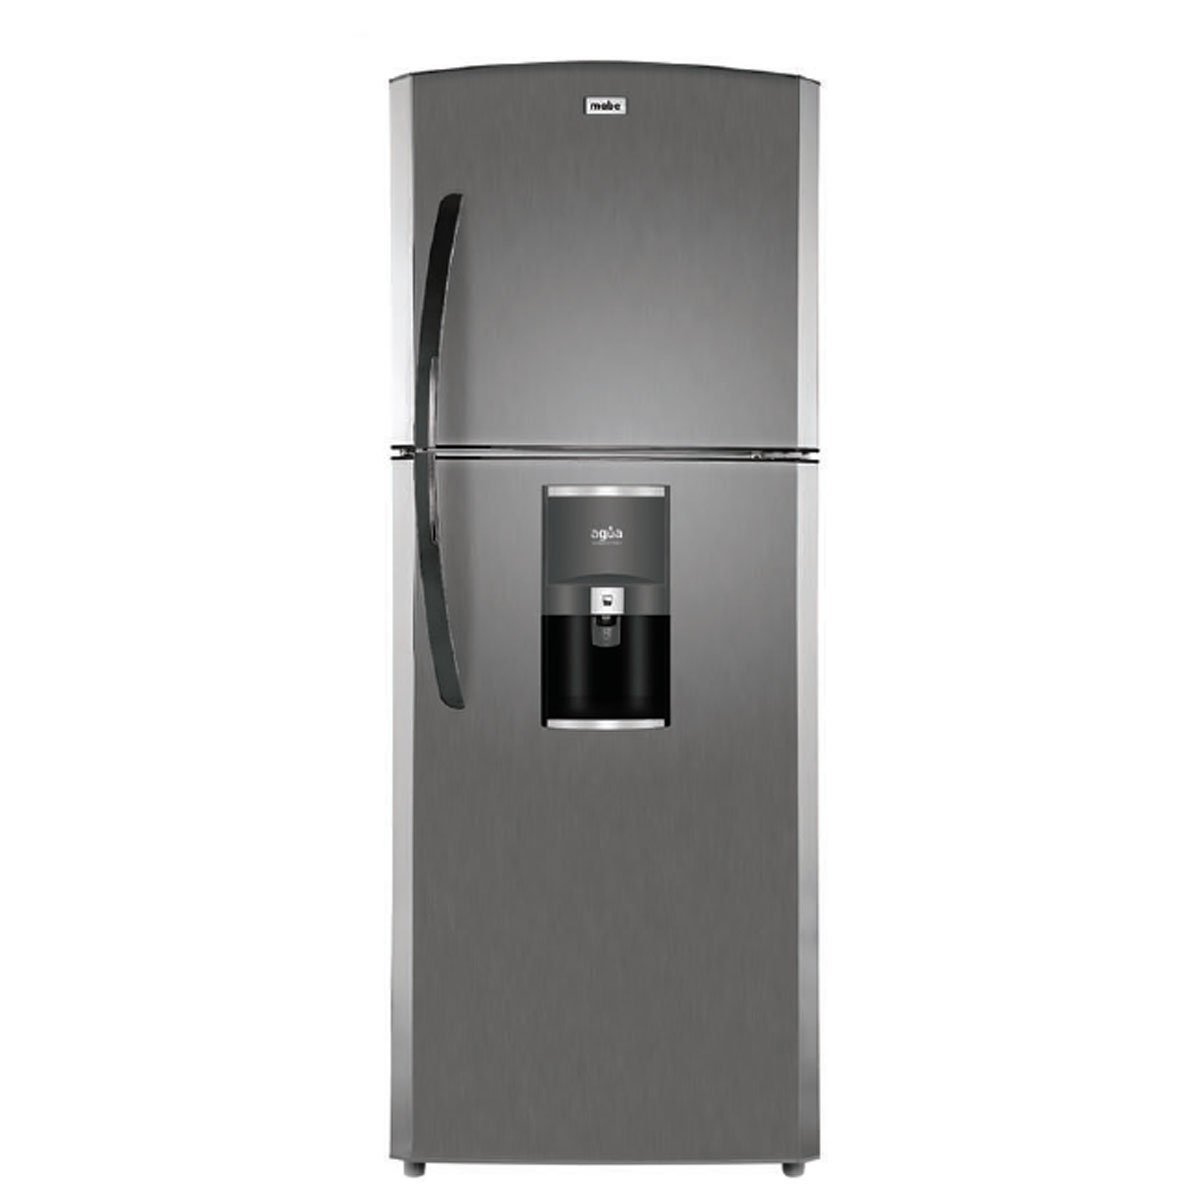 Refrigerador Mabe 2 Puertas Grafito Rme360Fgmre0